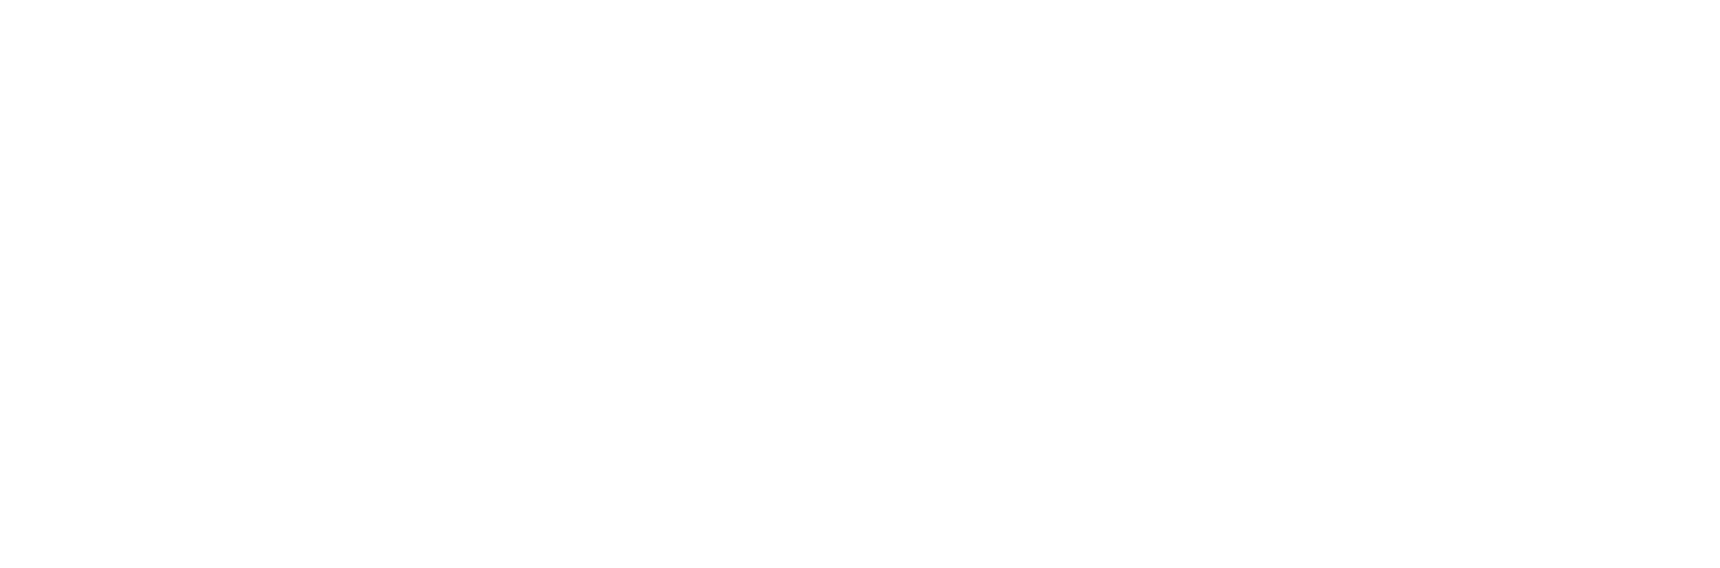 logos-clientes-transparente